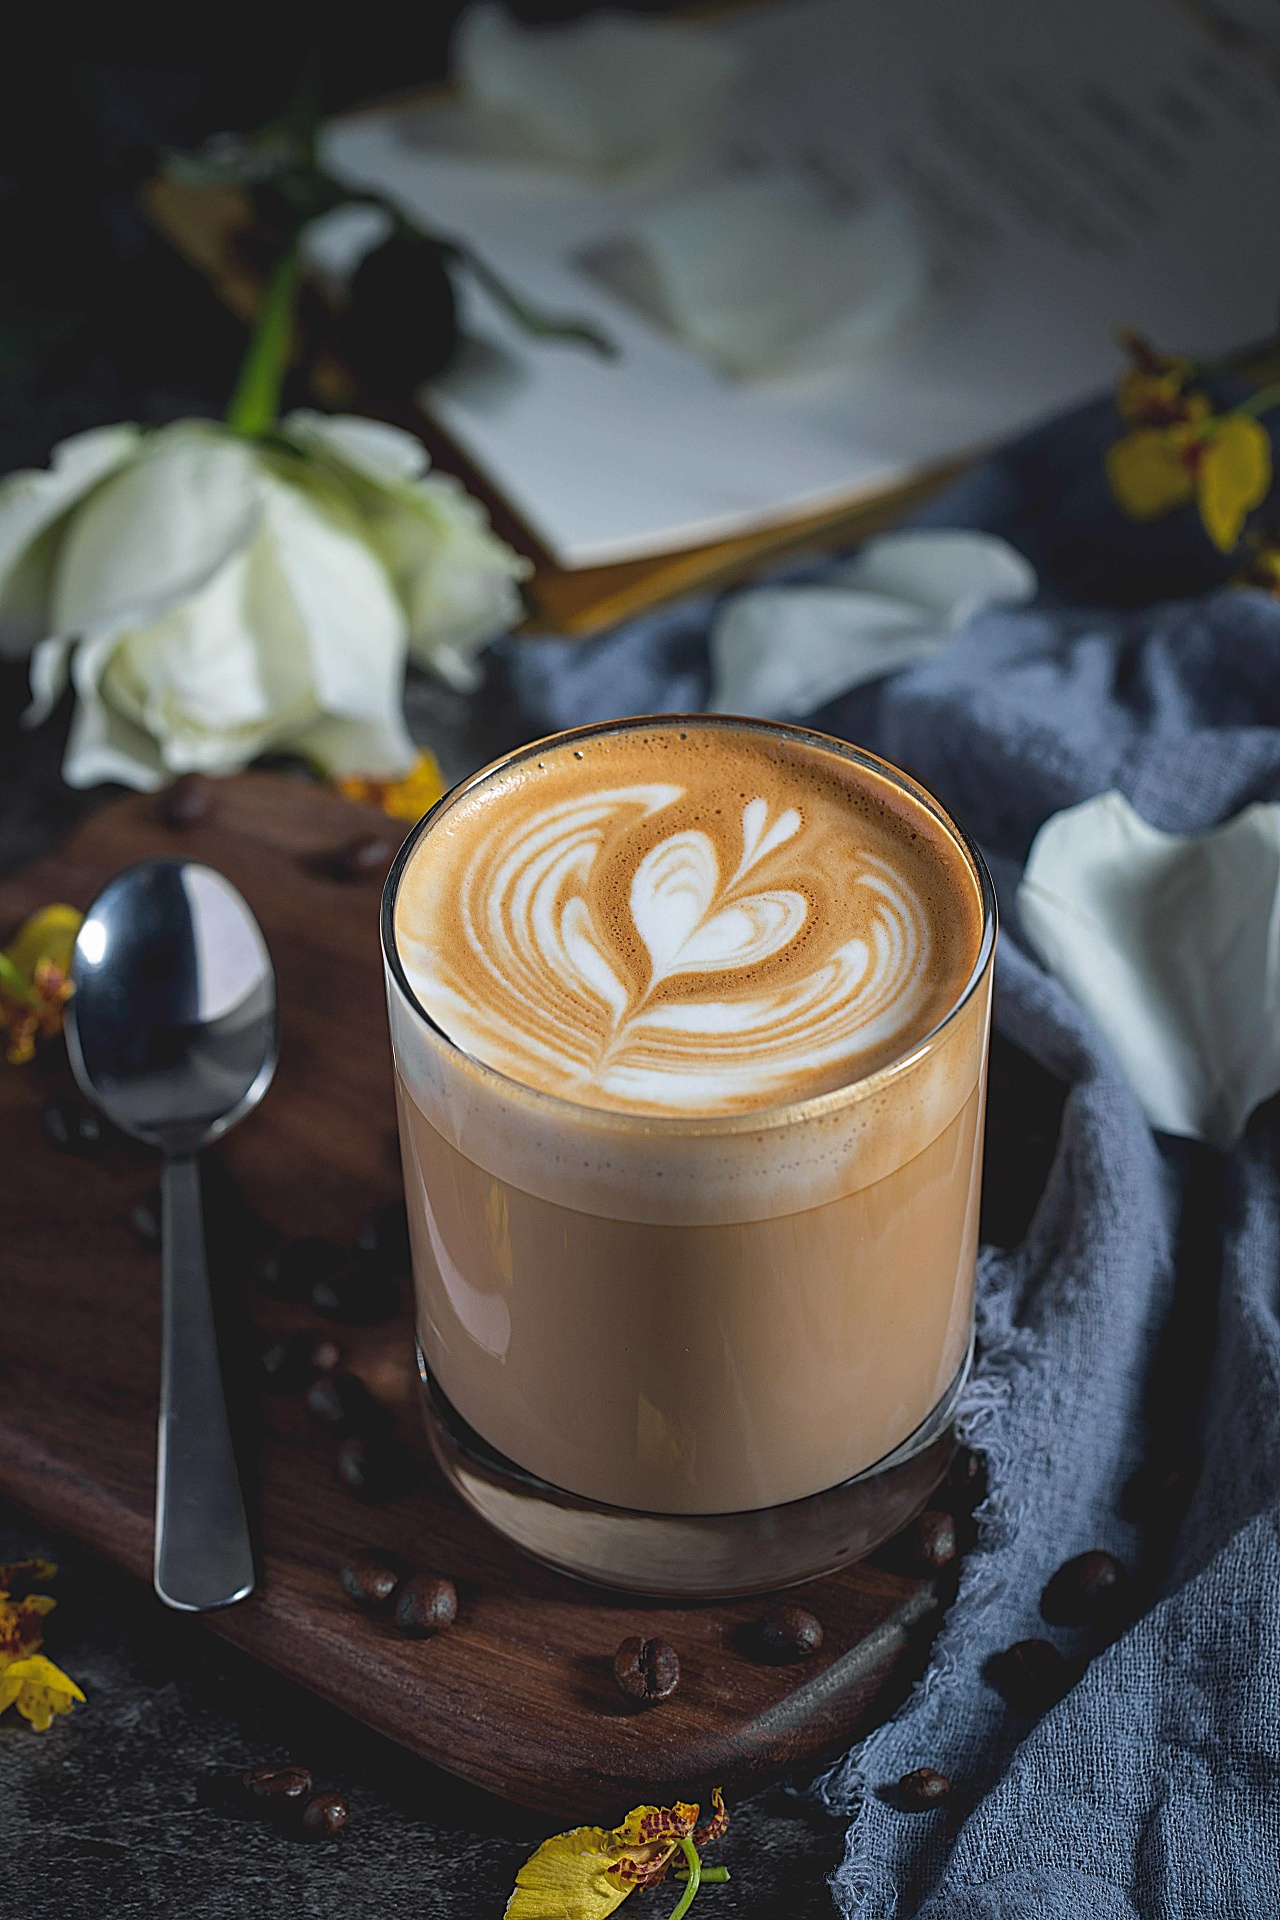 KOI Café 开出首家咖啡馆！茶饮品牌为何也频频进军咖啡市场？ 中国咖啡网